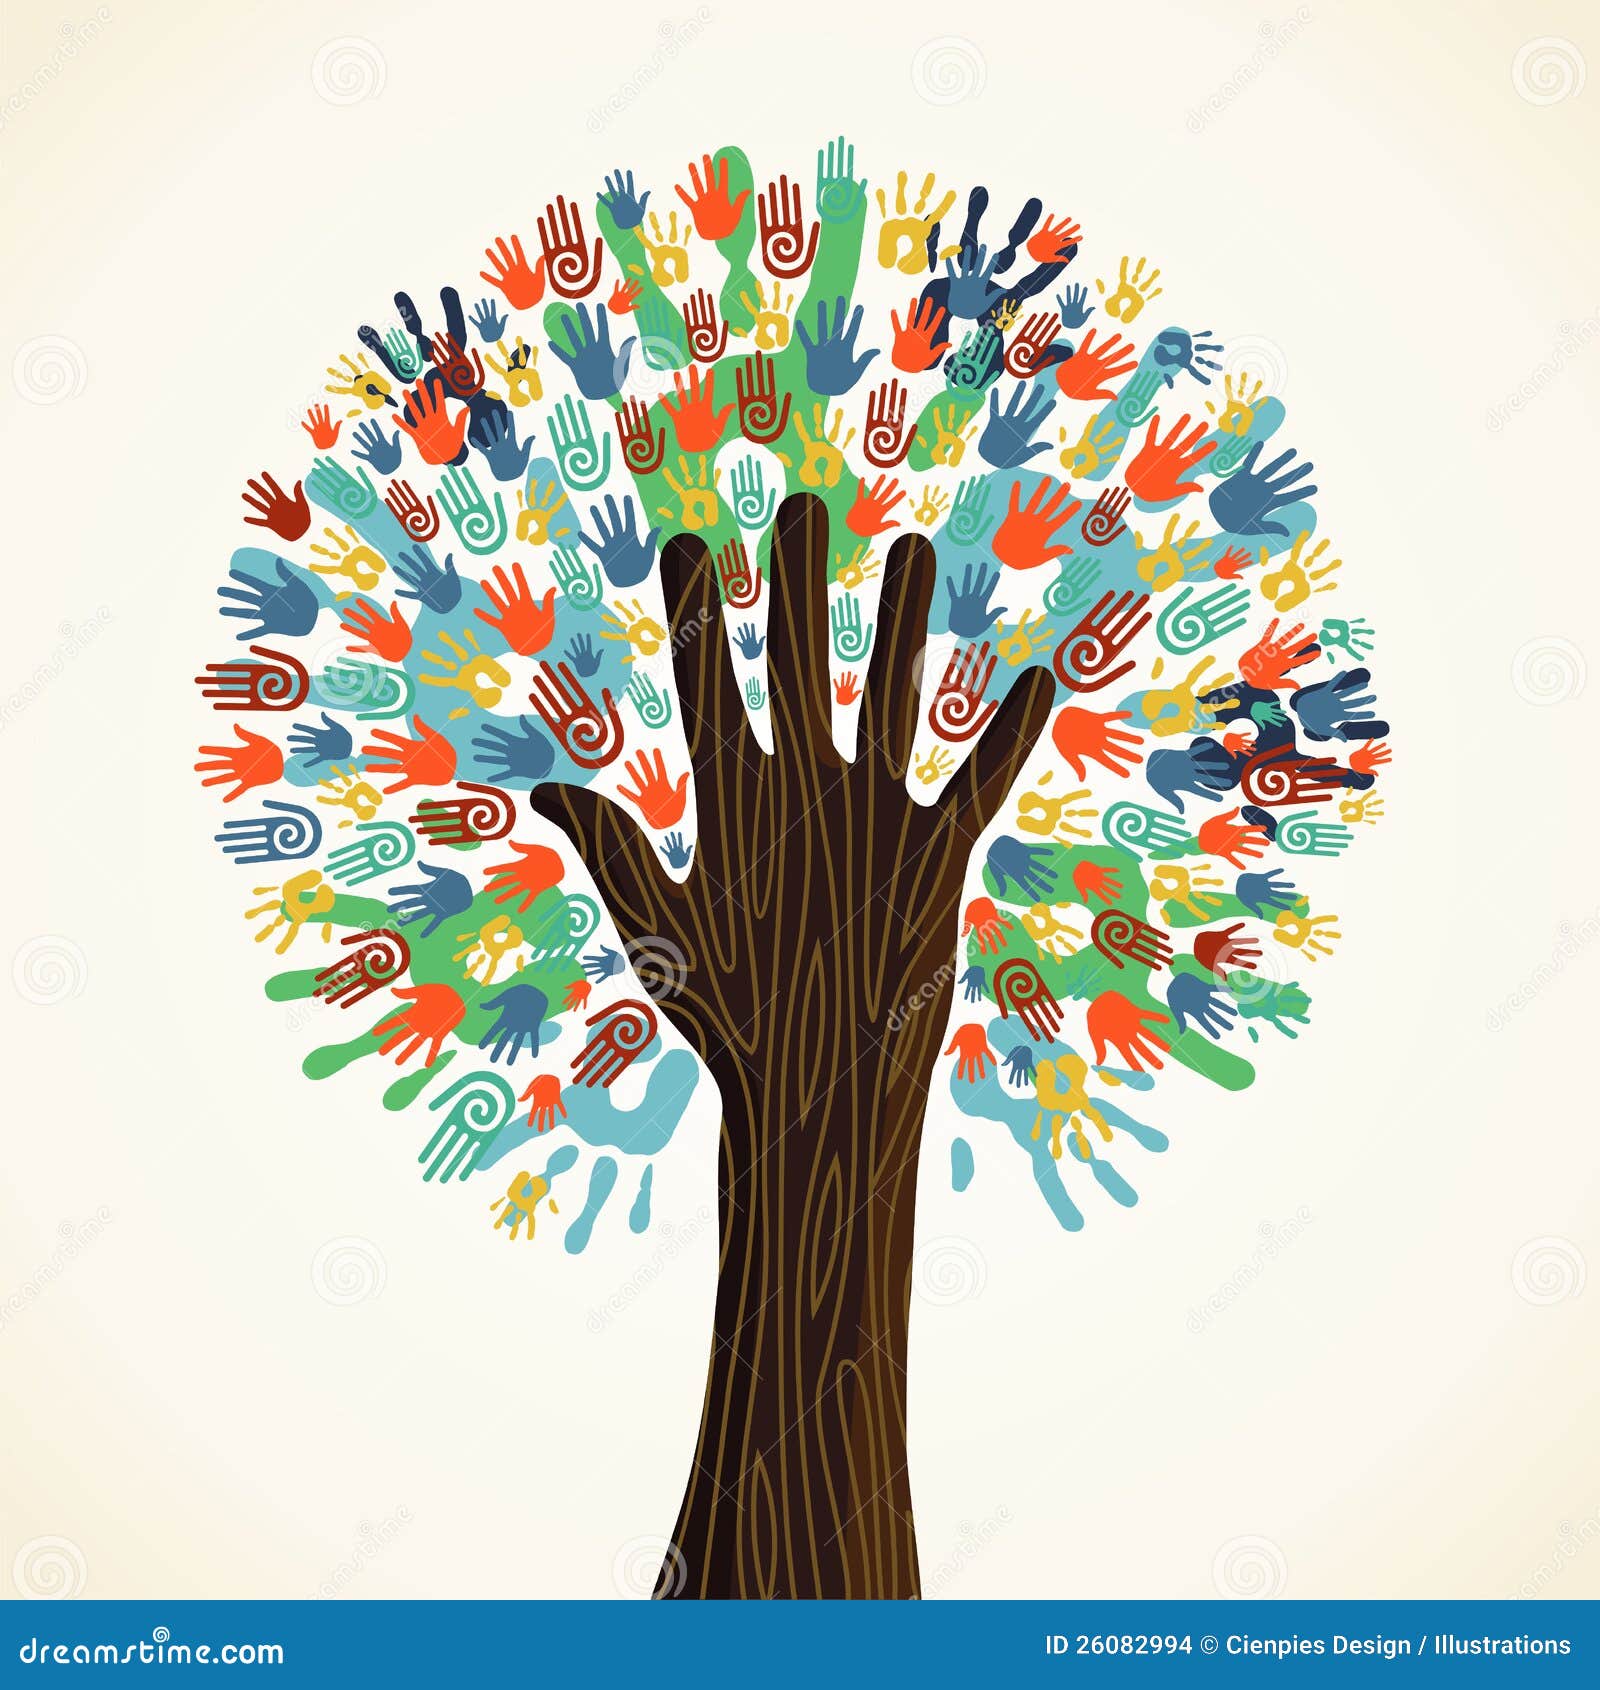  diversity tree hands